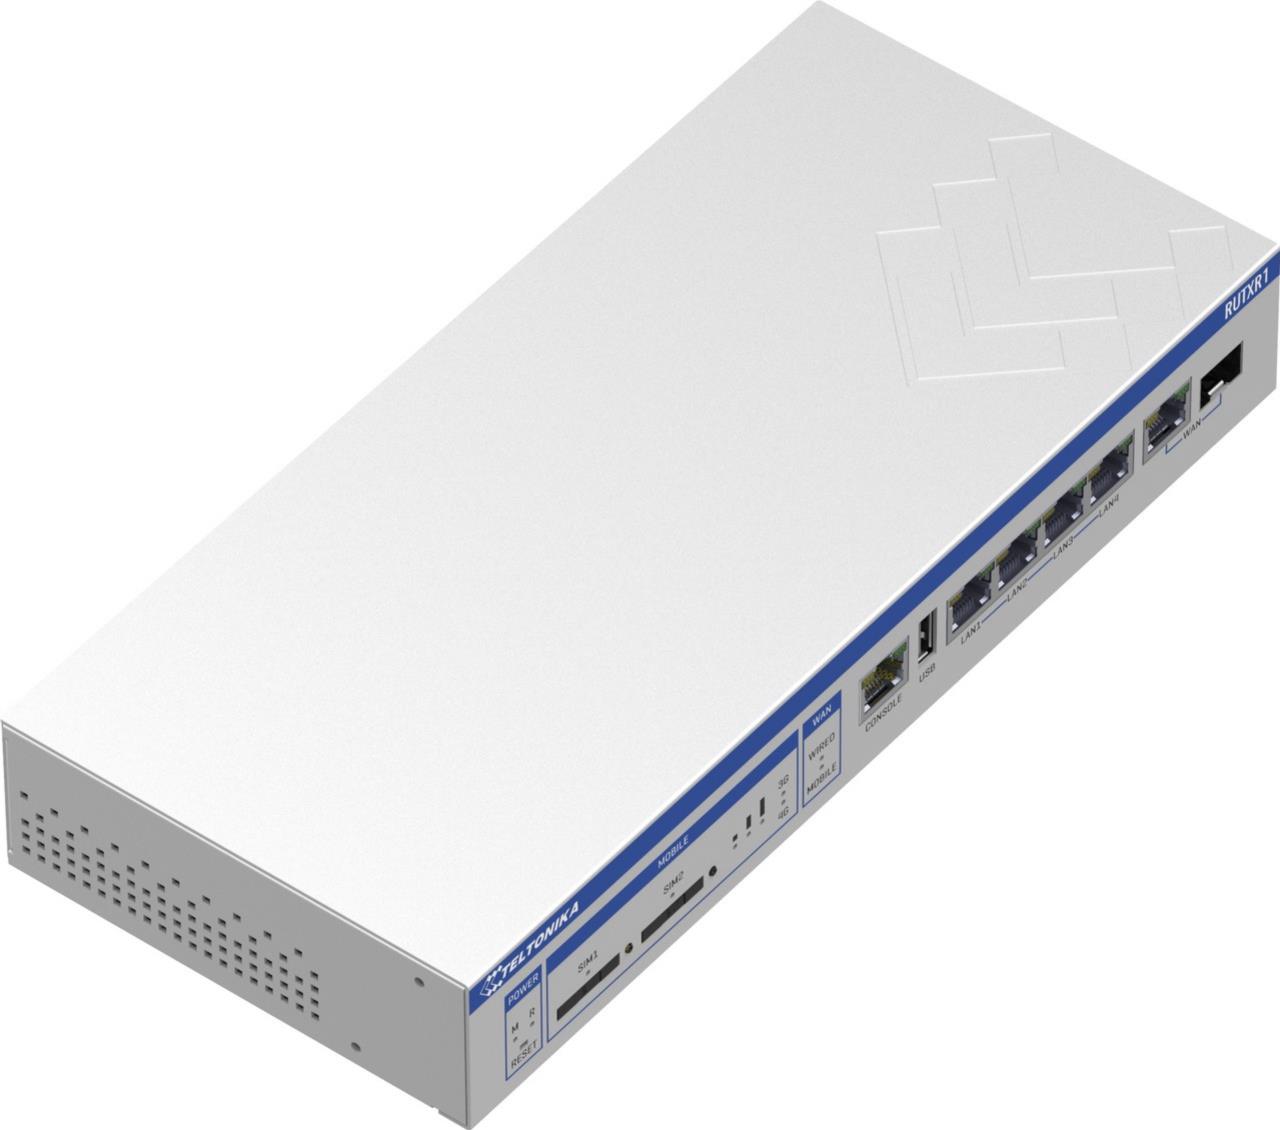 Enterprise Rack-Mountable SFP/LTE Router, Dual-SIM, 5x 1Gbit, Wave2 802.11ac 